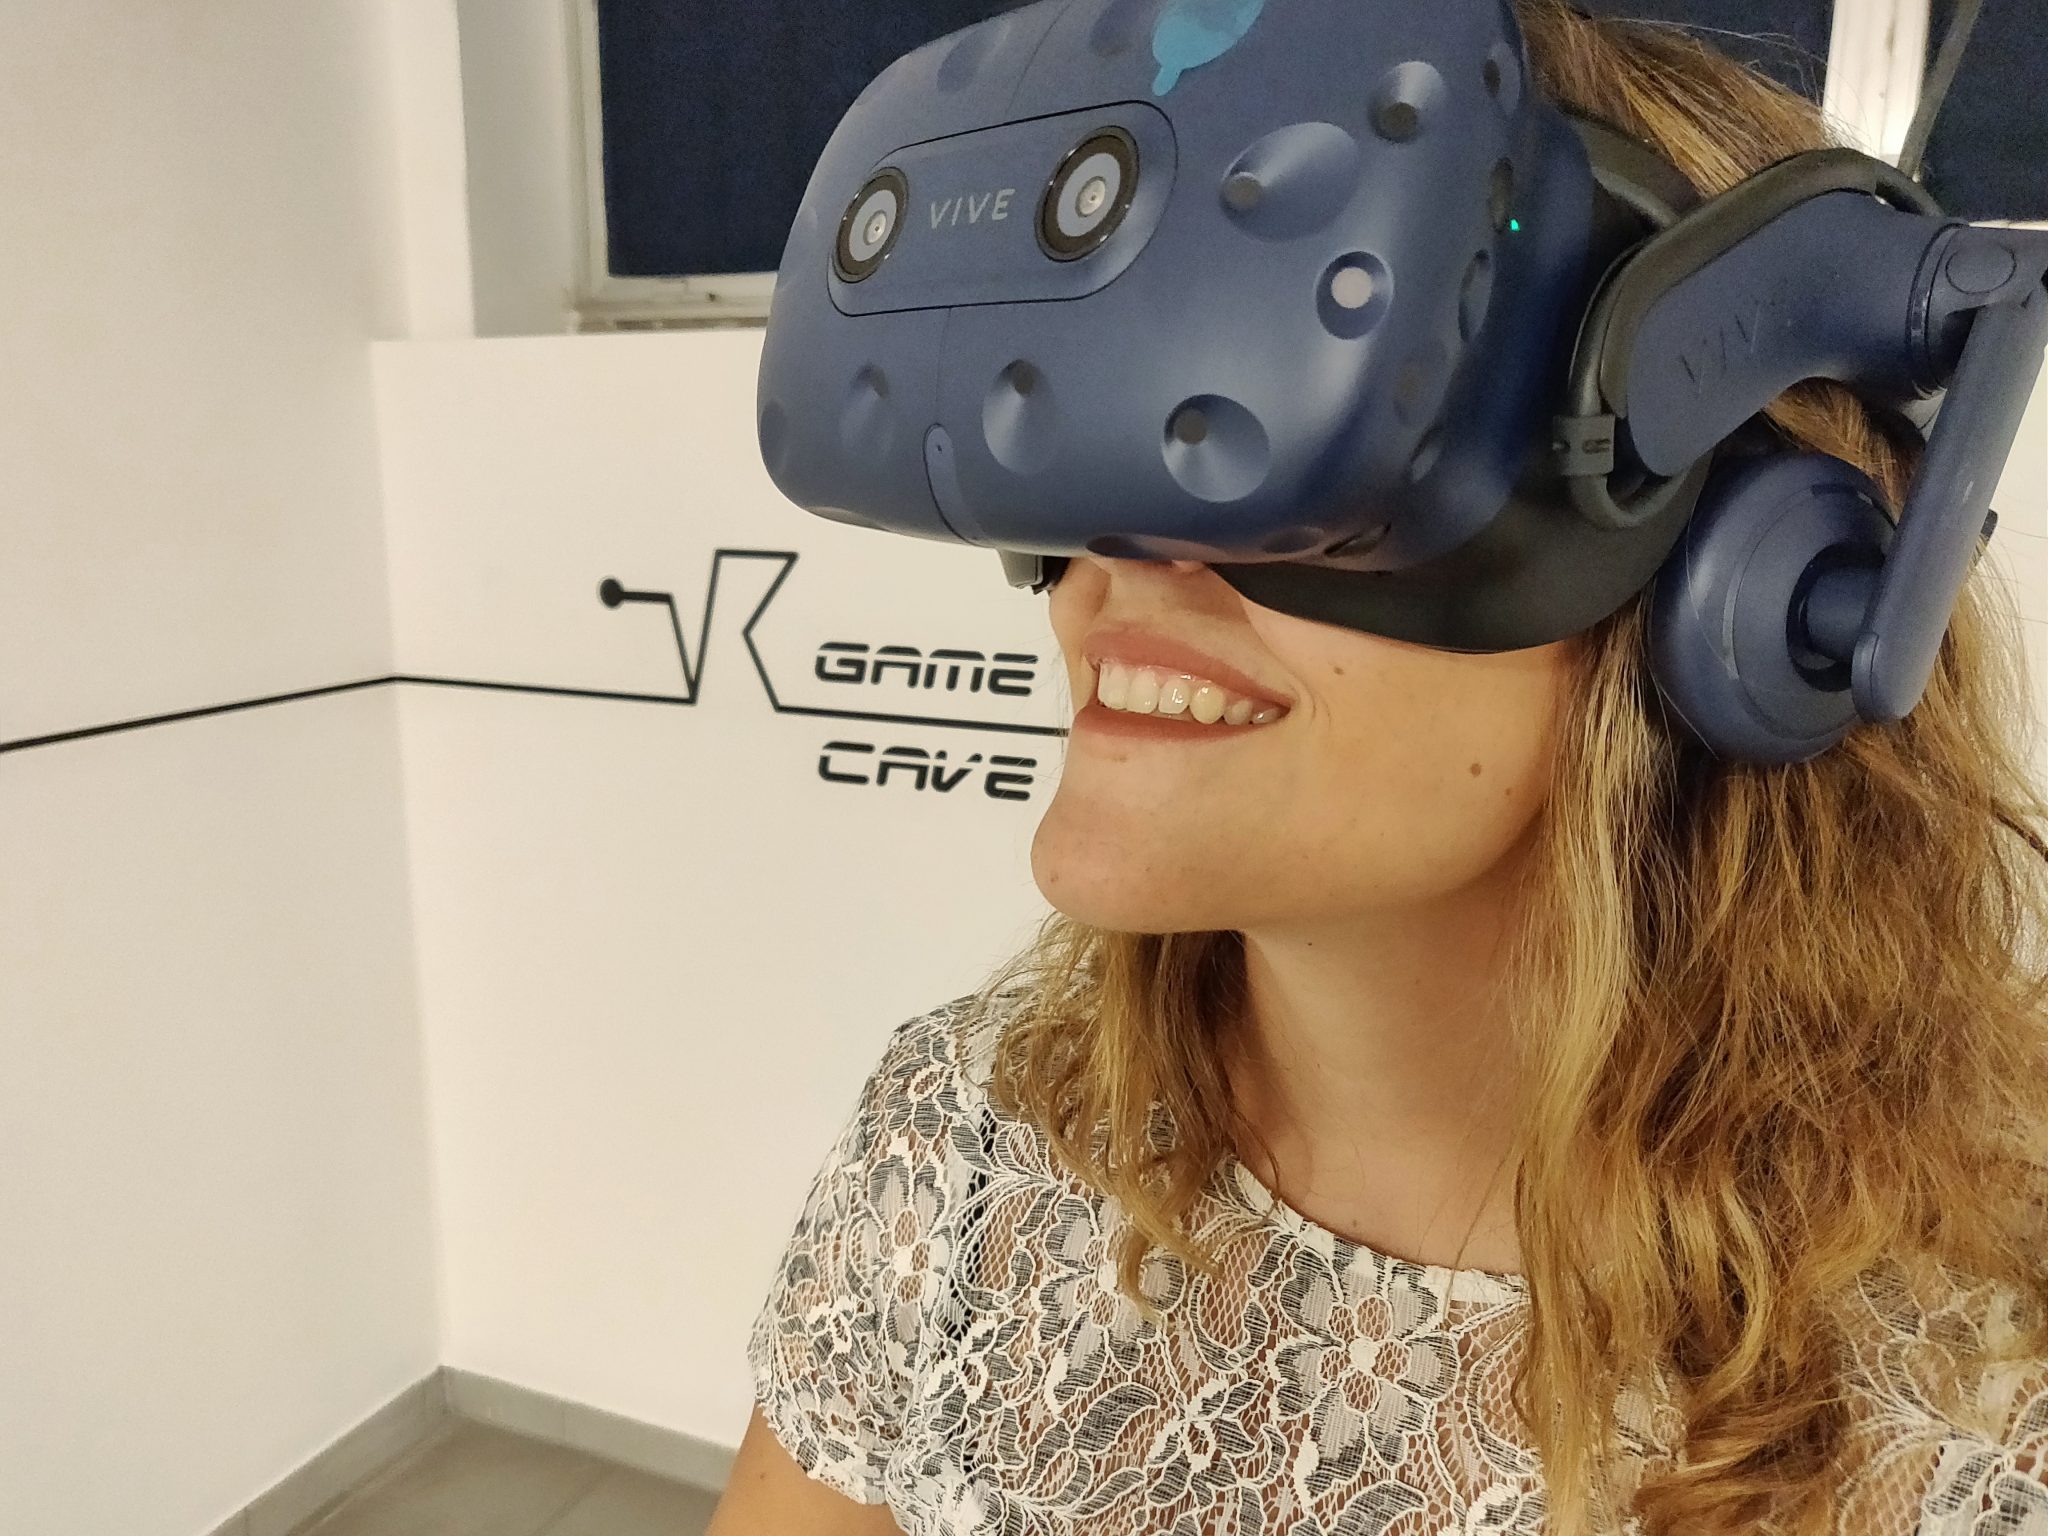 vr game cave realtà virtuale milano benessere tecnologico psicologia laura fasano sala giochi simulatore lenovo